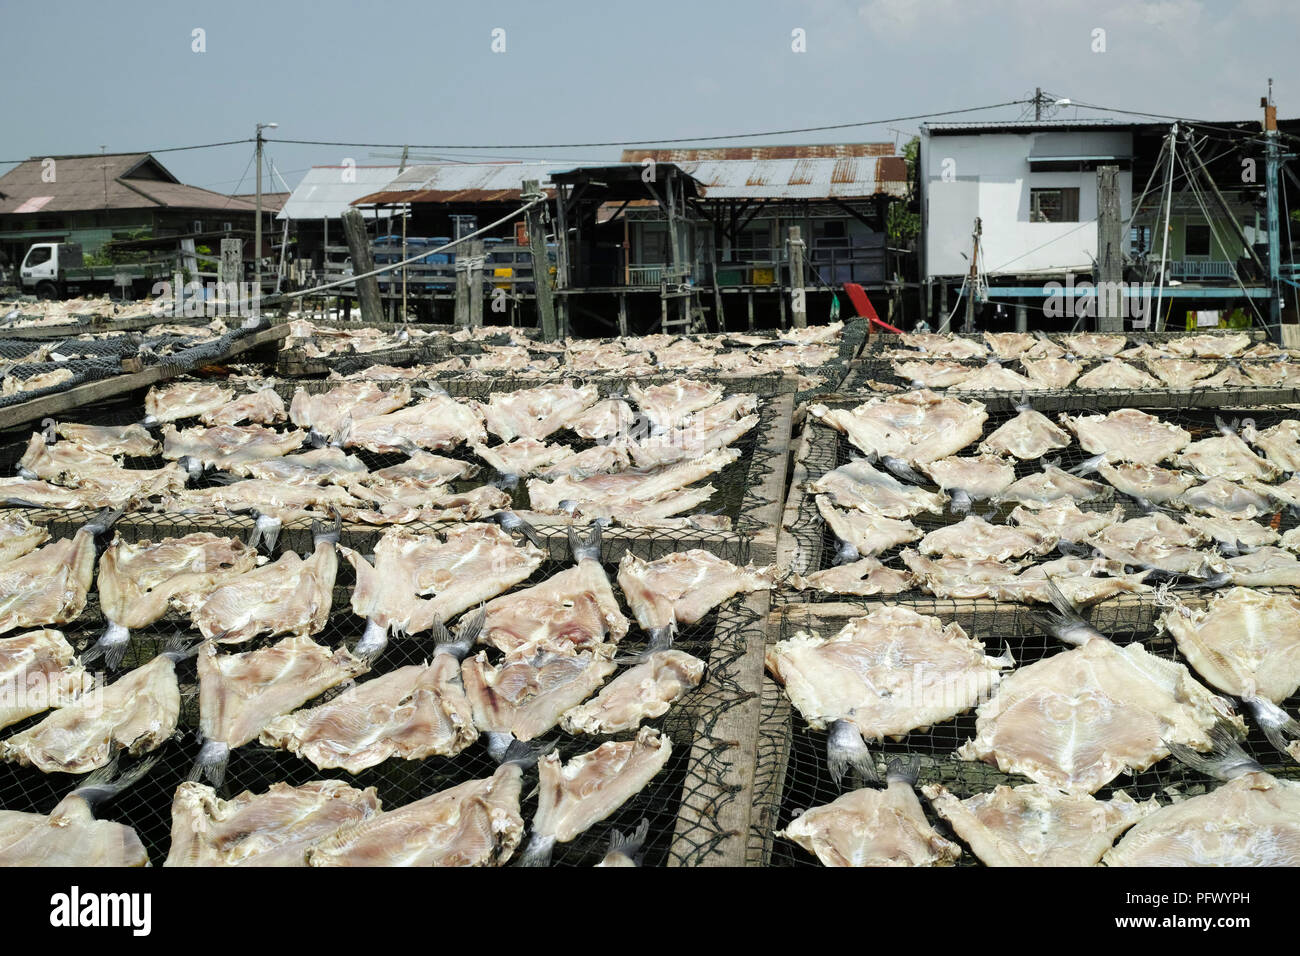 Fruits de mer frais et des produits du poisson. Sekinchan village de pêcheurs, la Malaisie péninsulaire. Banque D'Images